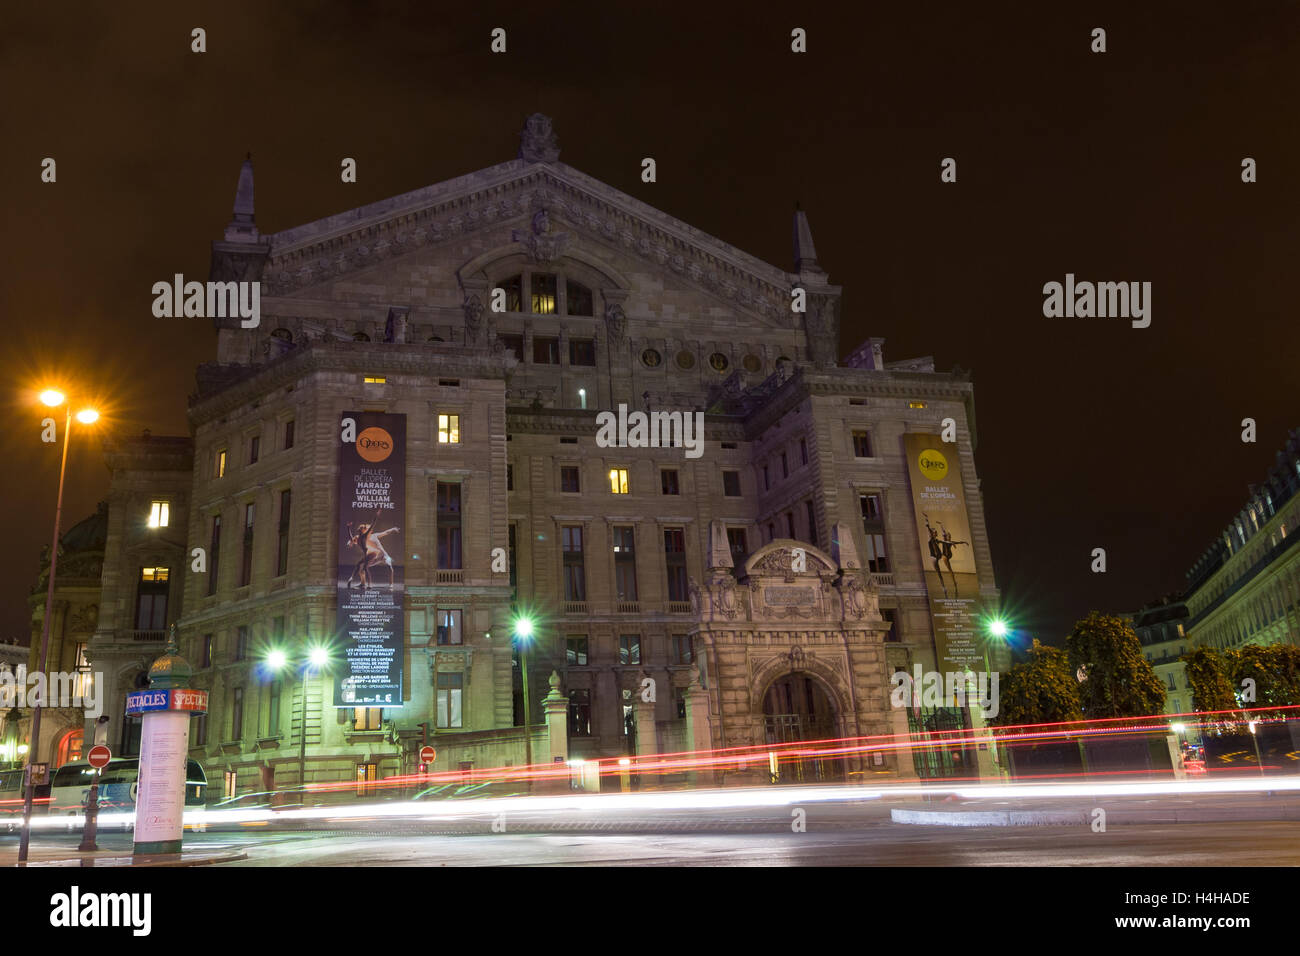 PARIS - SEPT 17, 2014 : vue de la nuit de la façade du palais de l'Opéra Garnier ou l'Opéra de Paris. Banque D'Images